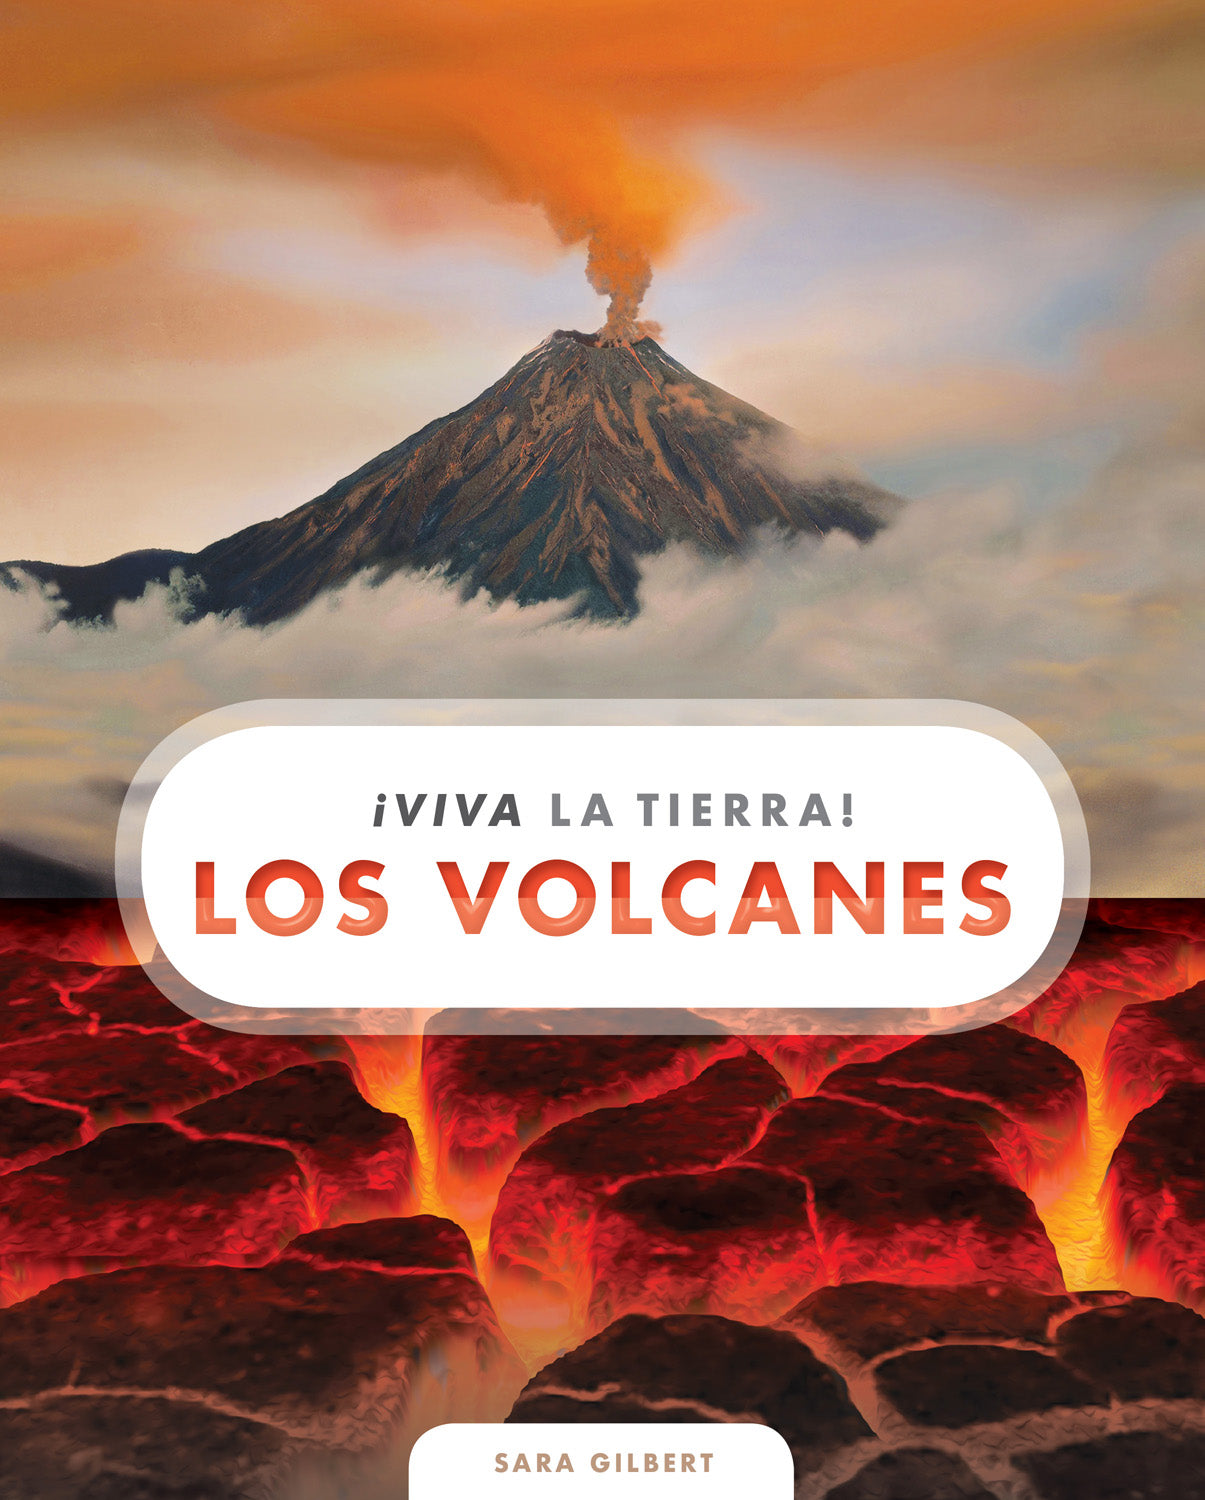 ¡Viva la Tierra!: Los volcanes by The Creative Company Shop